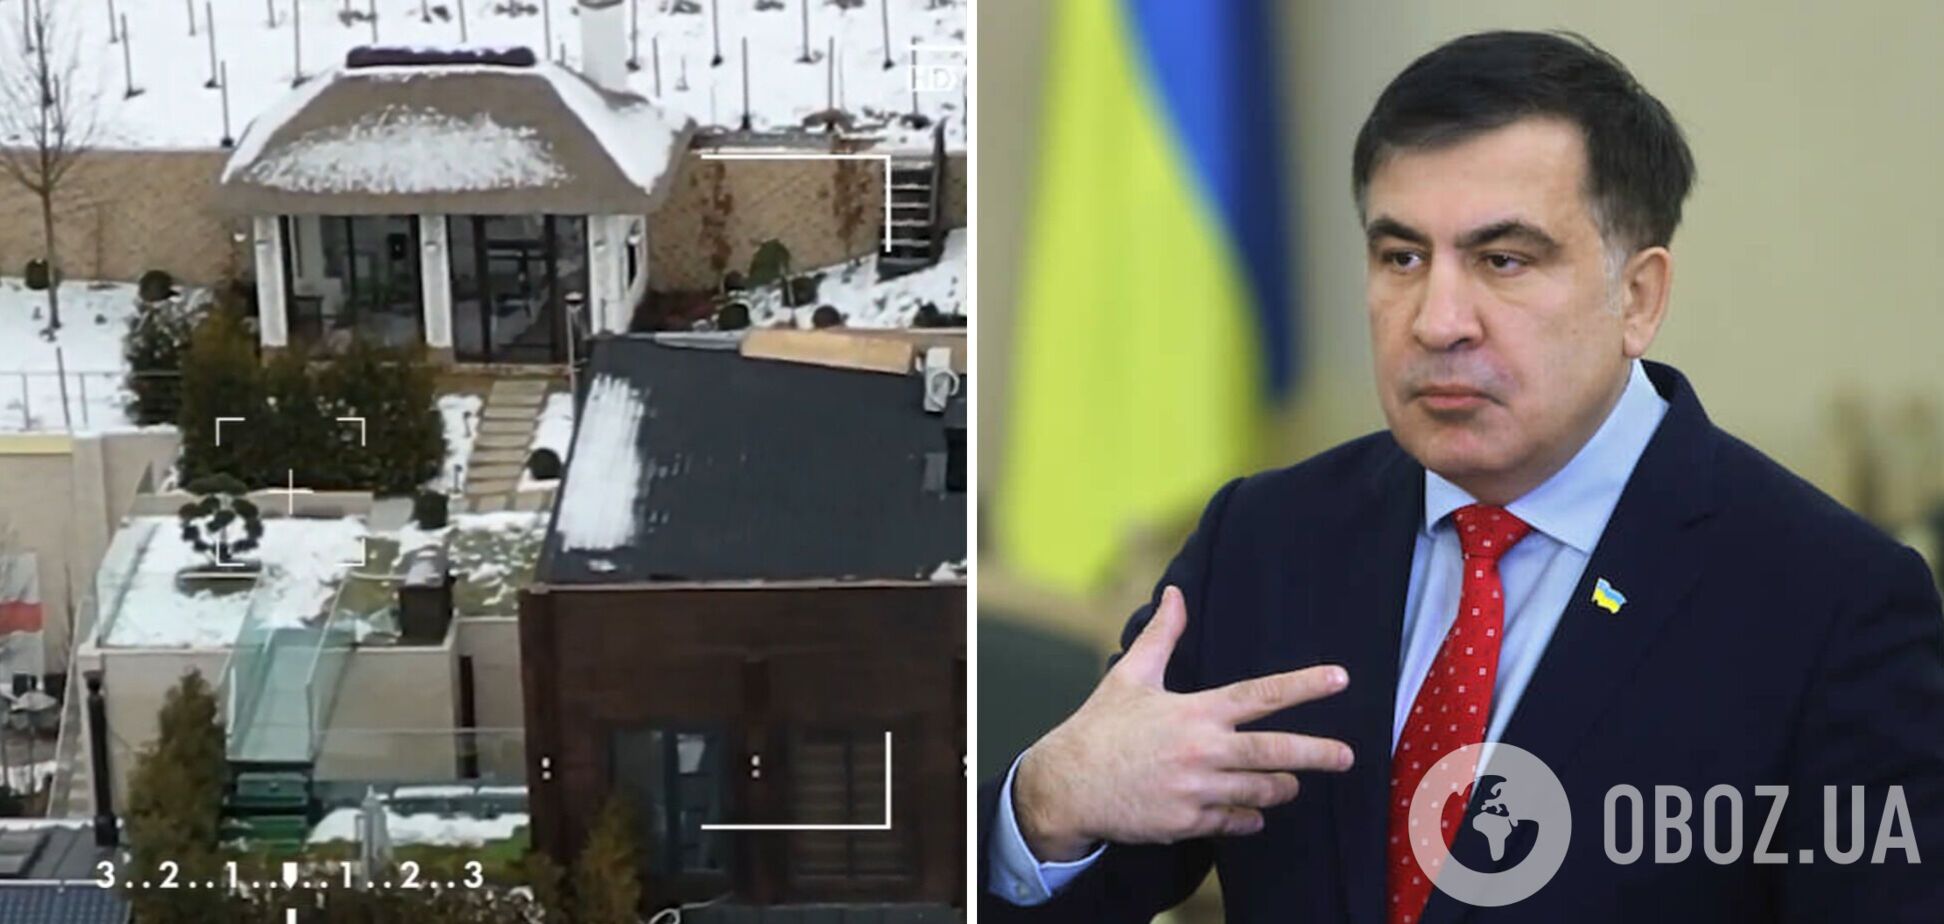 Особняк Саакашвили под Киевом